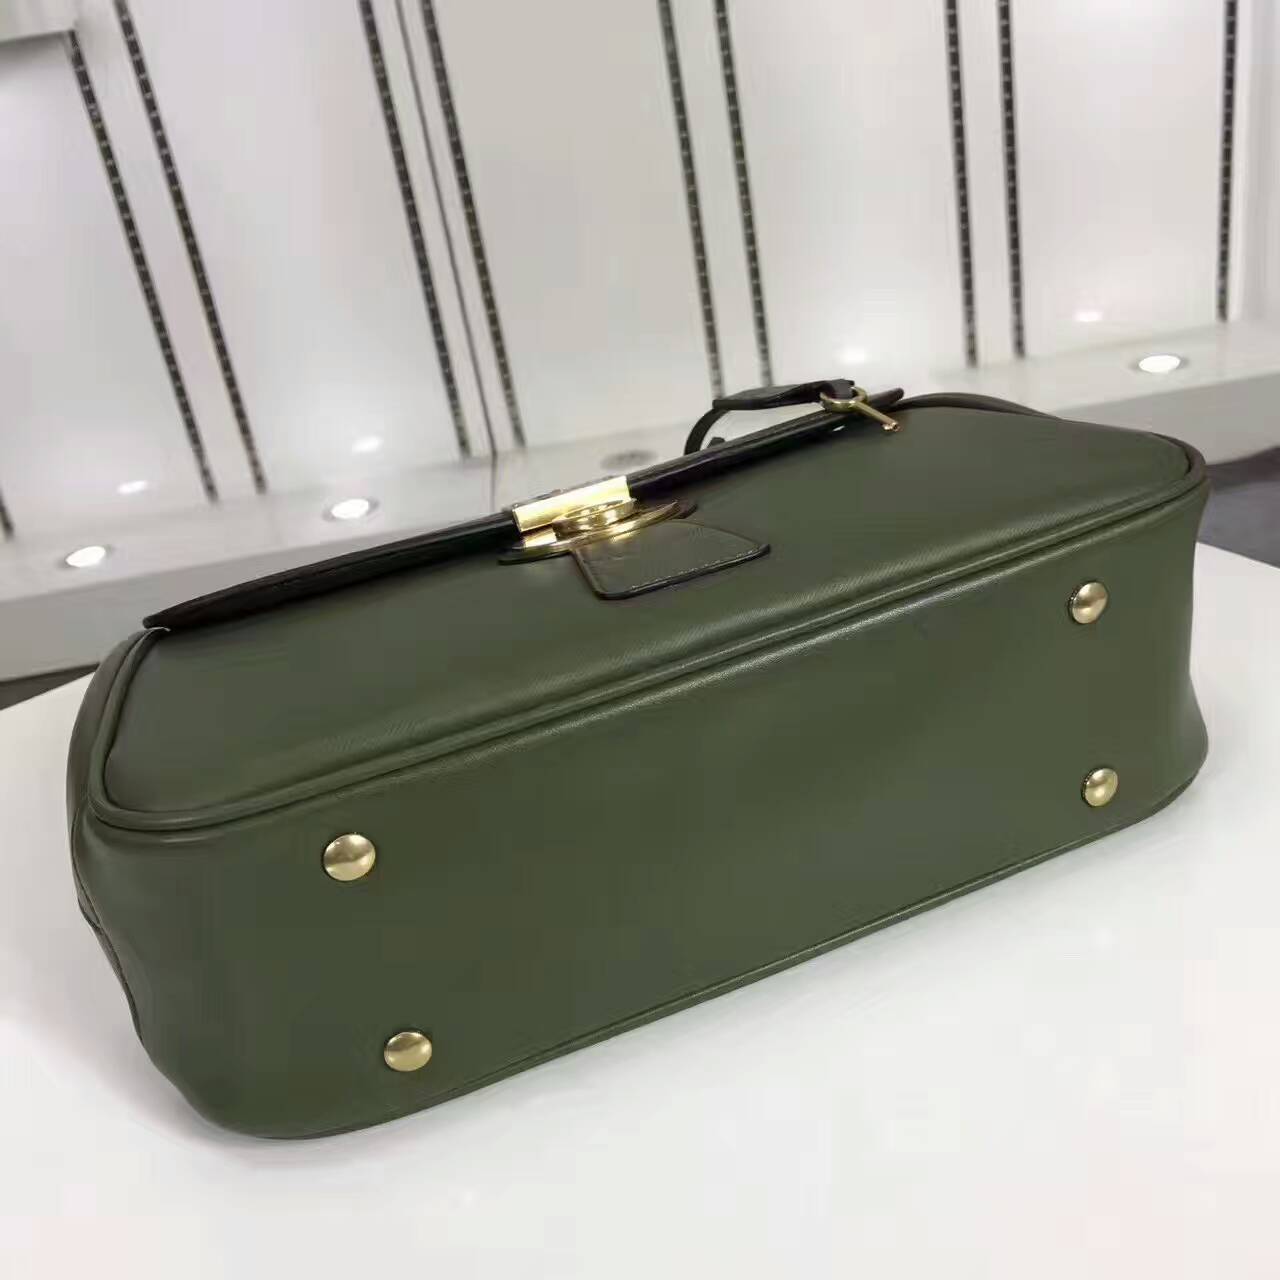 Burberry Handbags AAA-122